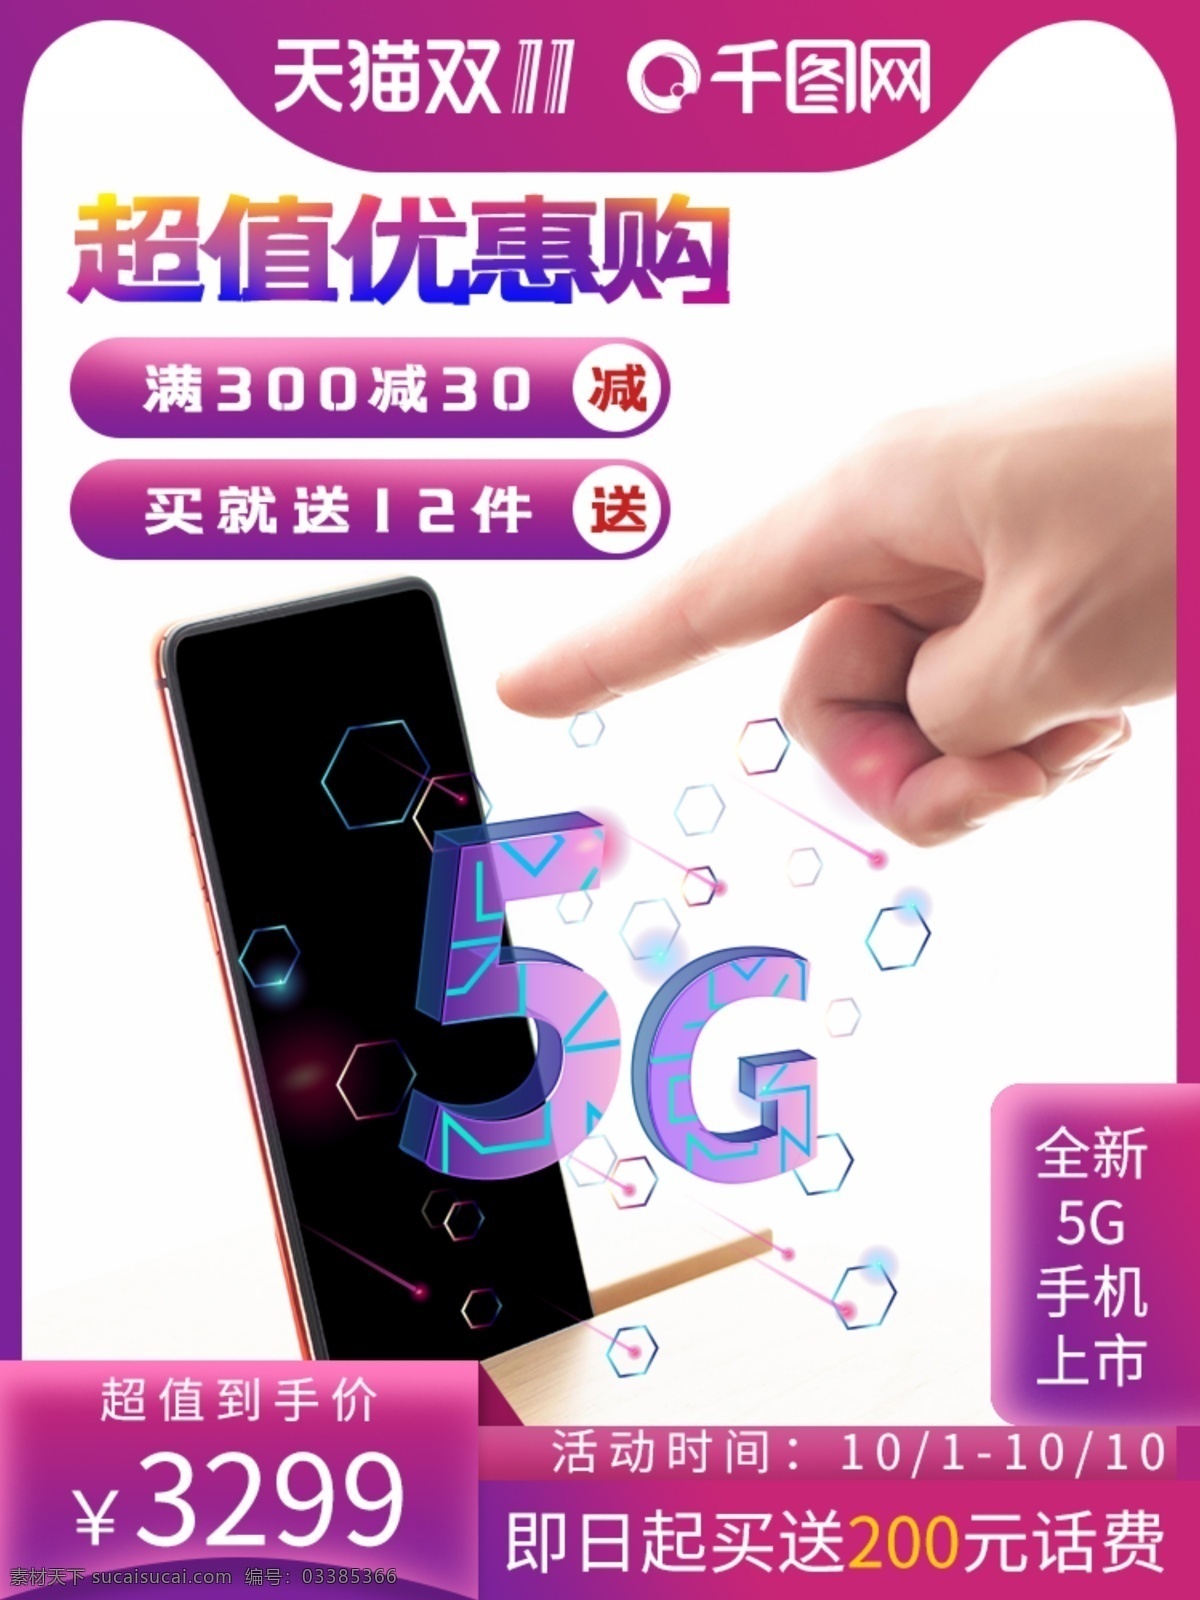 5g 手机 双十 天猫 淘宝 竖 版主 图 国庆 首 钻展 首焦 紫色 渐变 数码电器